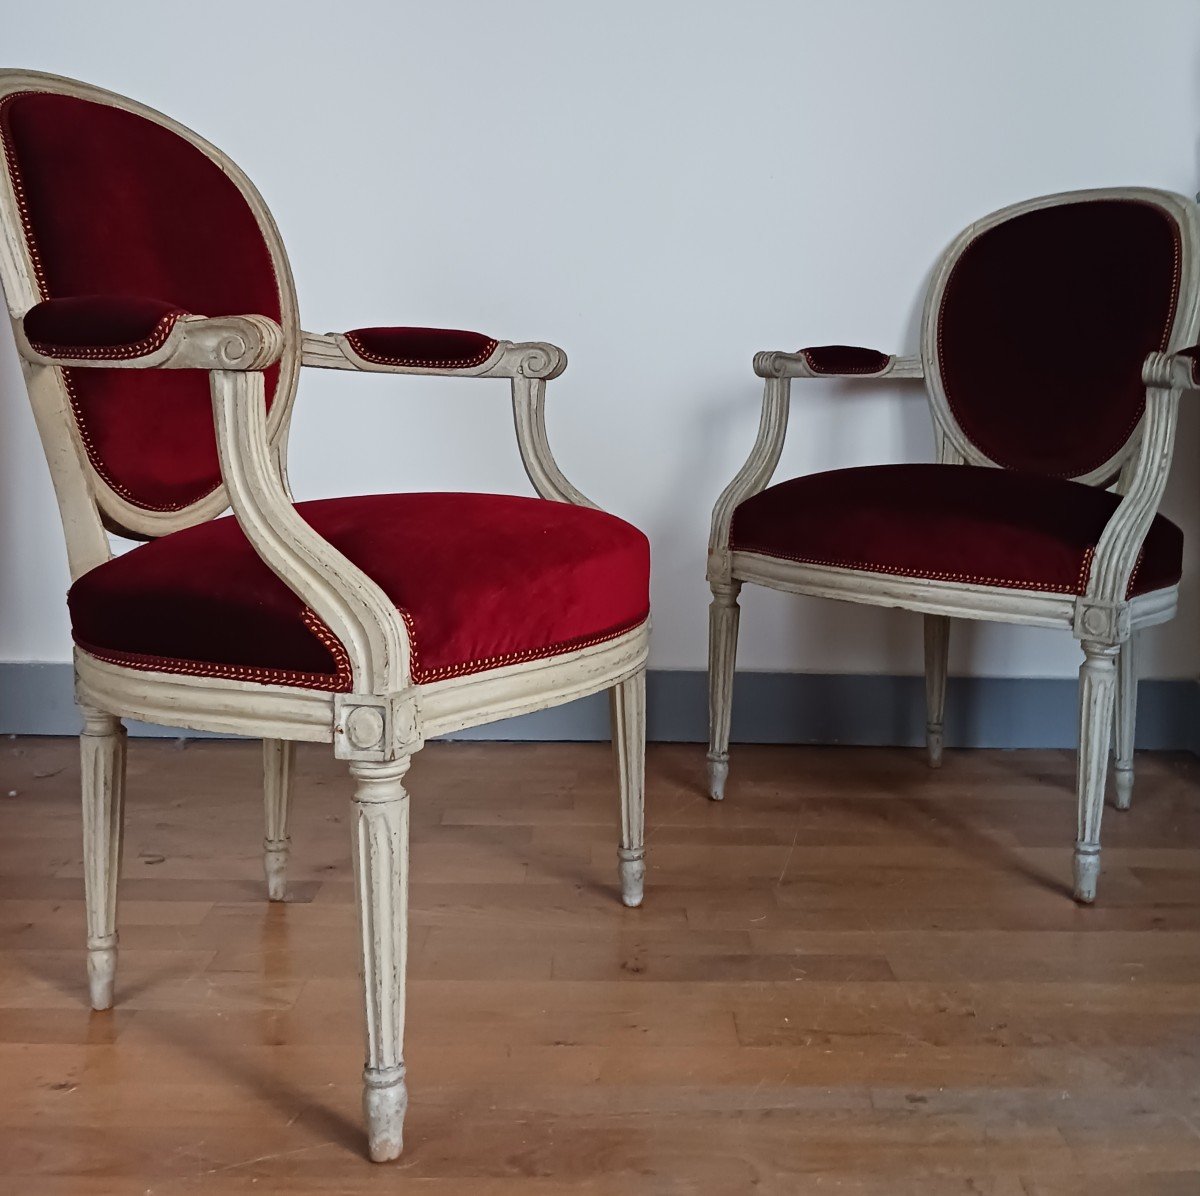 Claude Gorgu, maître en 1770 - paire de fauteuils en cabriolet - restaurés - velours jaspé - numéro d'inventaire-photo-2